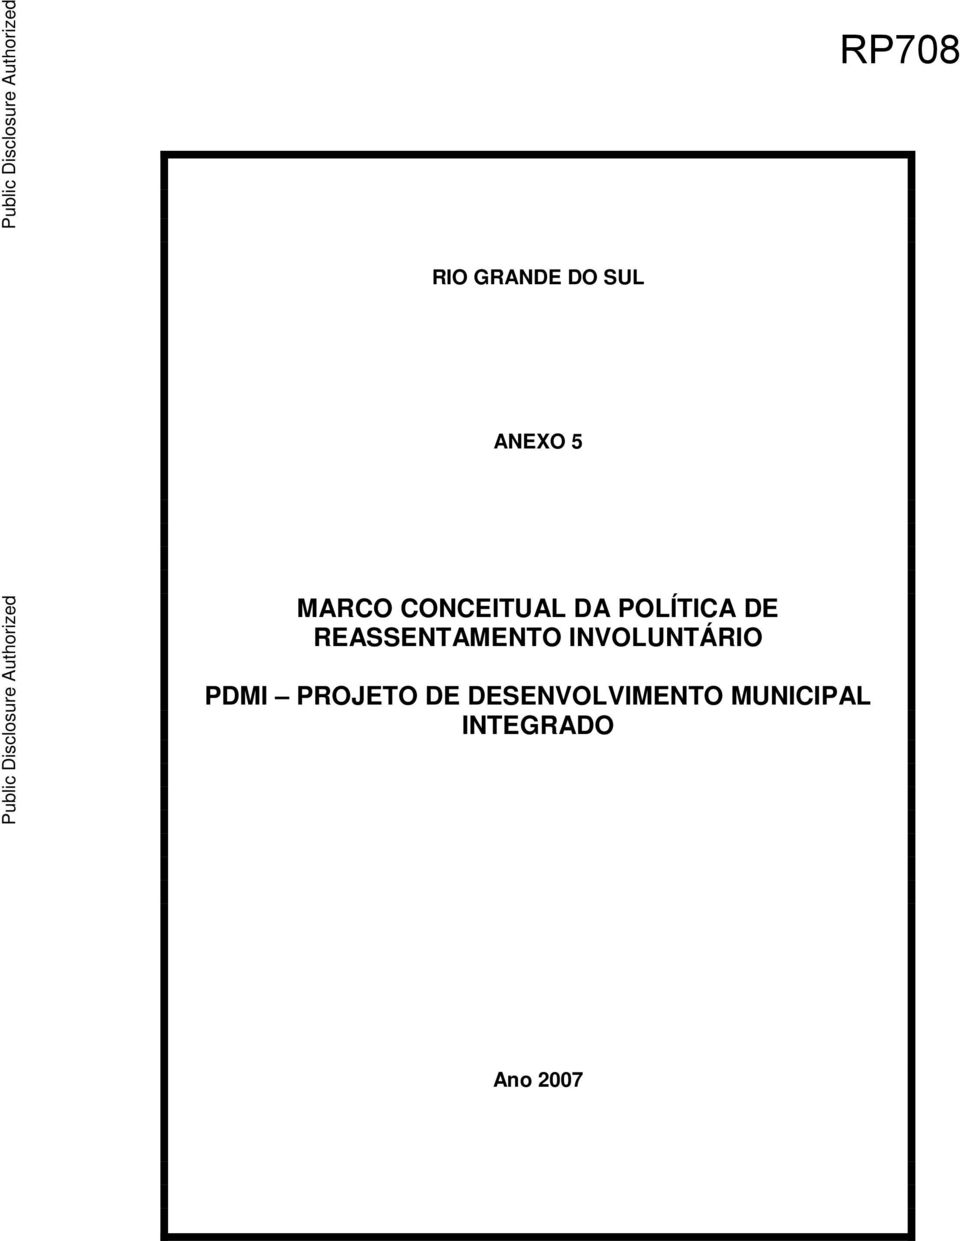 CONCEITUAL DA POLÍTICA DE REASSENTAMENTO INVOLUNTÁRIO PDMI PROJETO